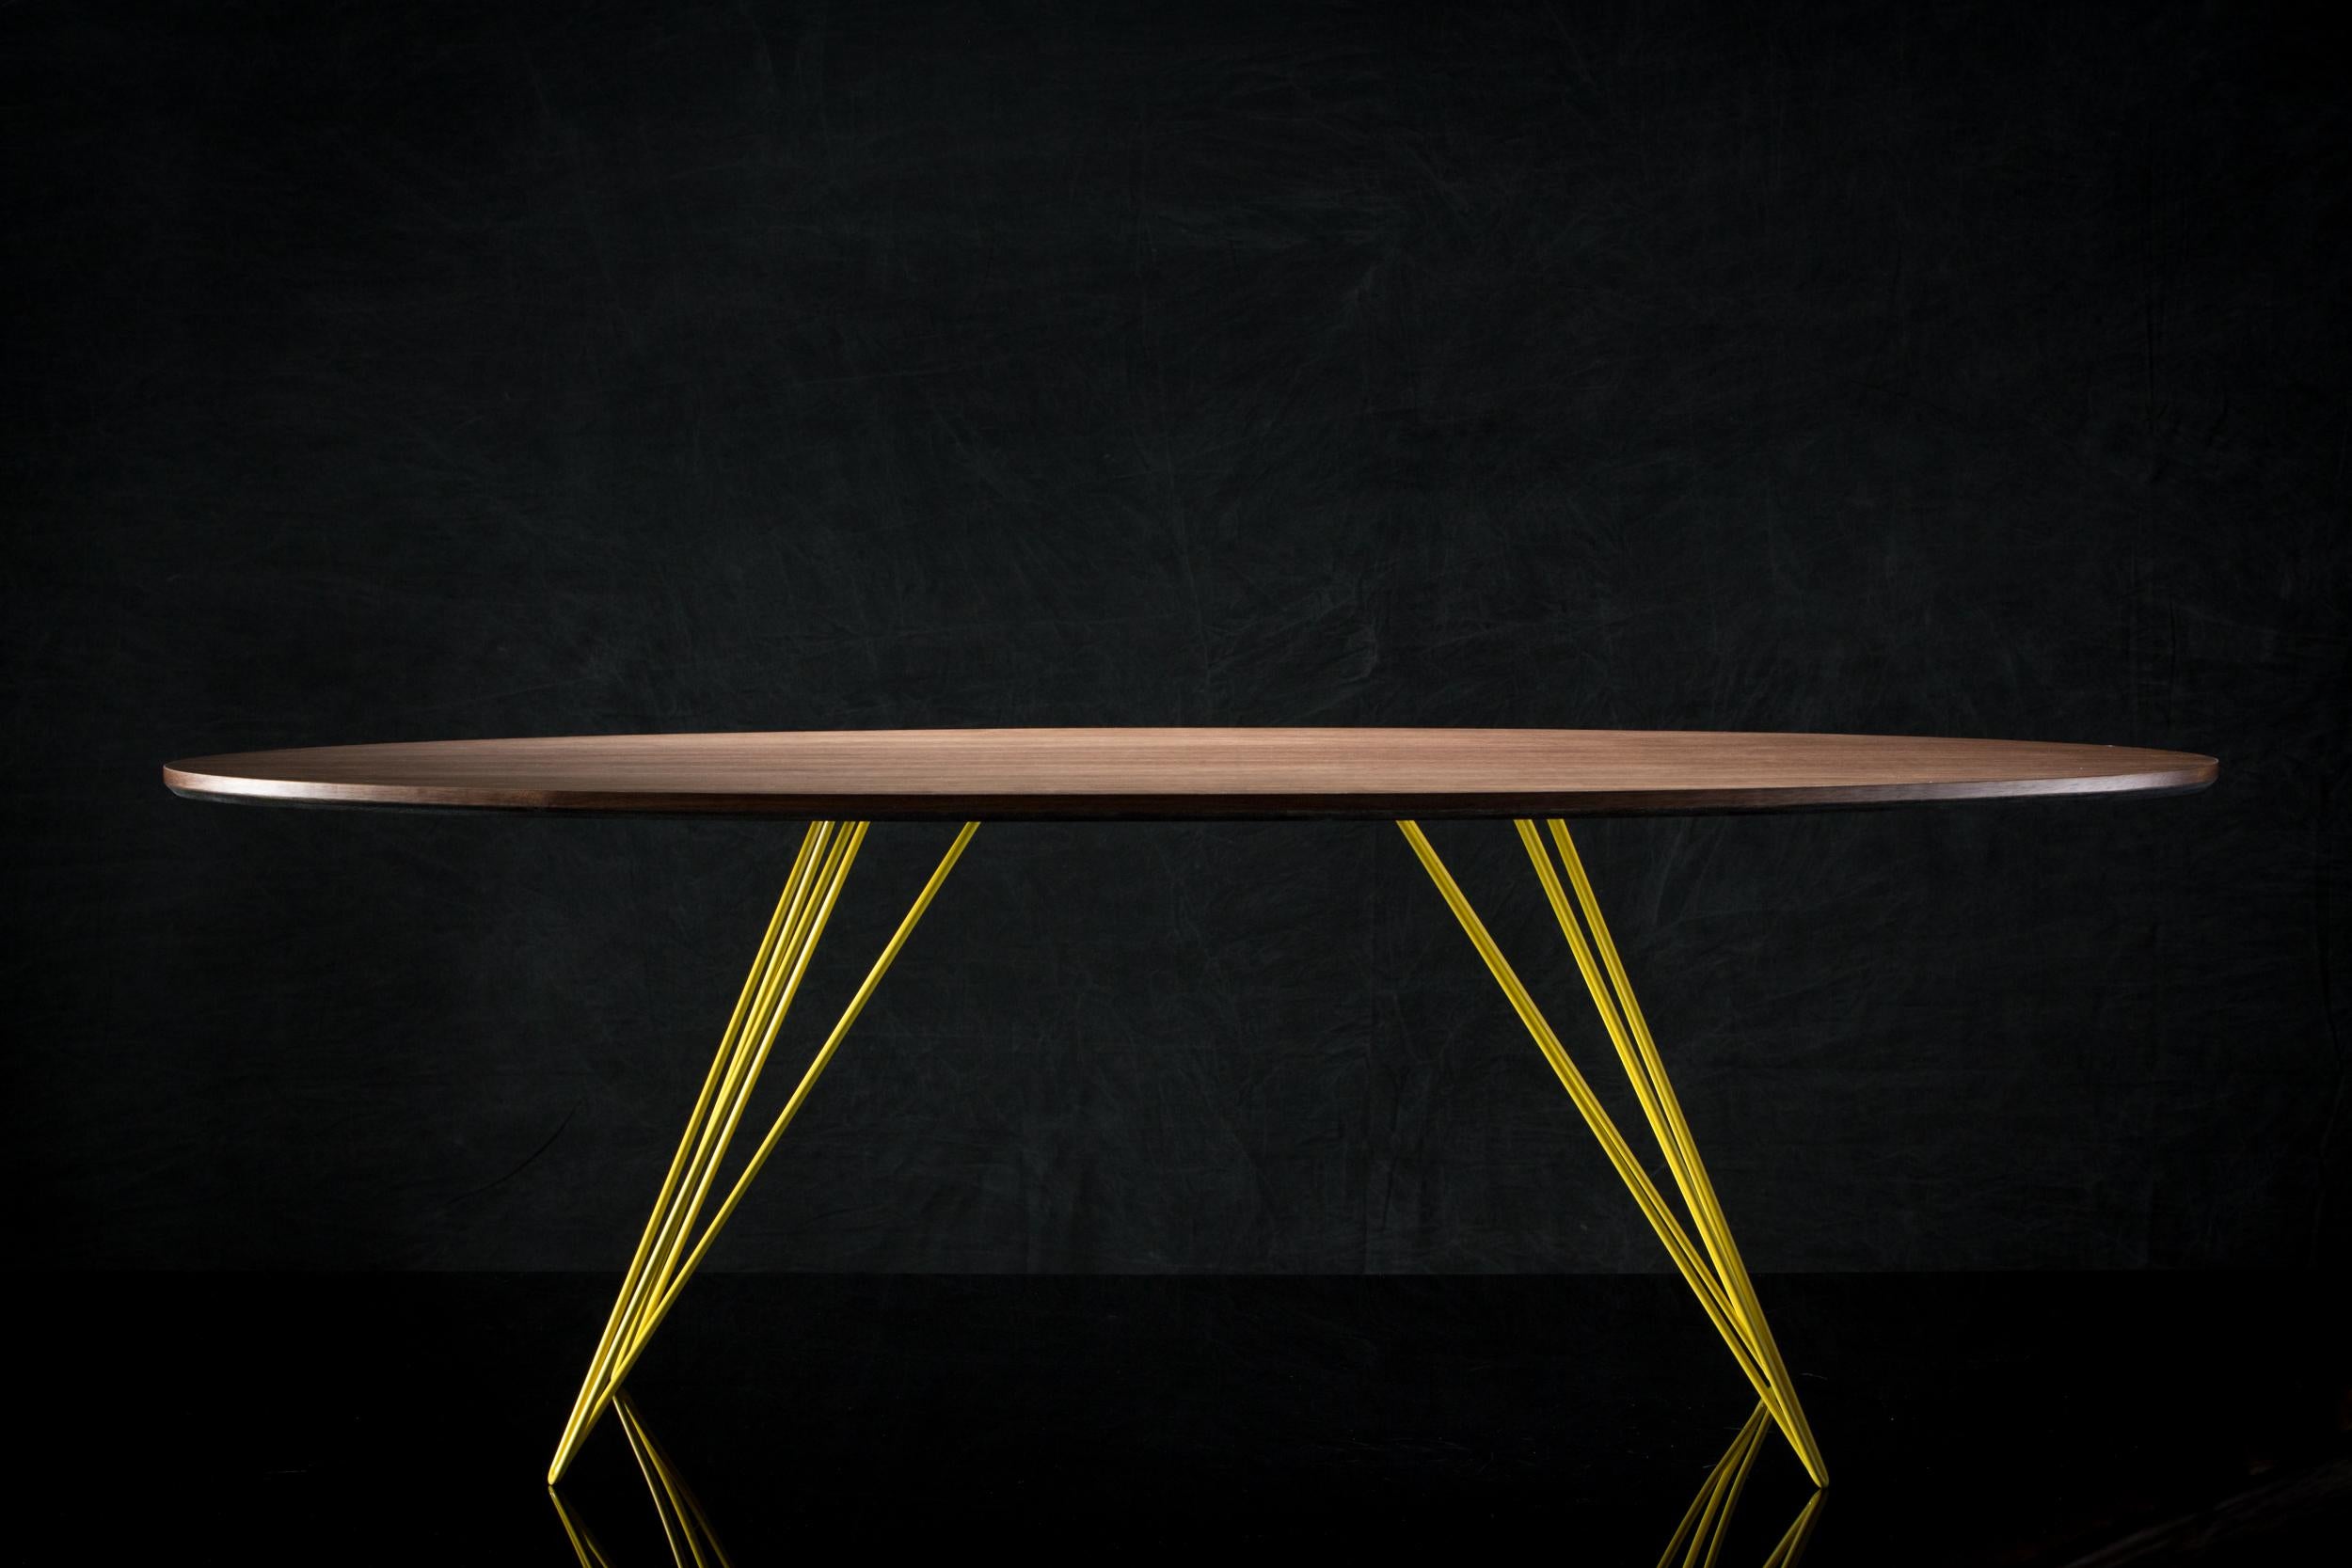 Une table fine, élégante et légère qui peut être personnalisée selon la forme, la taille et la couleur souhaitées. Cet article fabriqué à la main allie parfaitement des pieds industriels en épingle à cheveux à un plateau en bois biseauté. La beauté